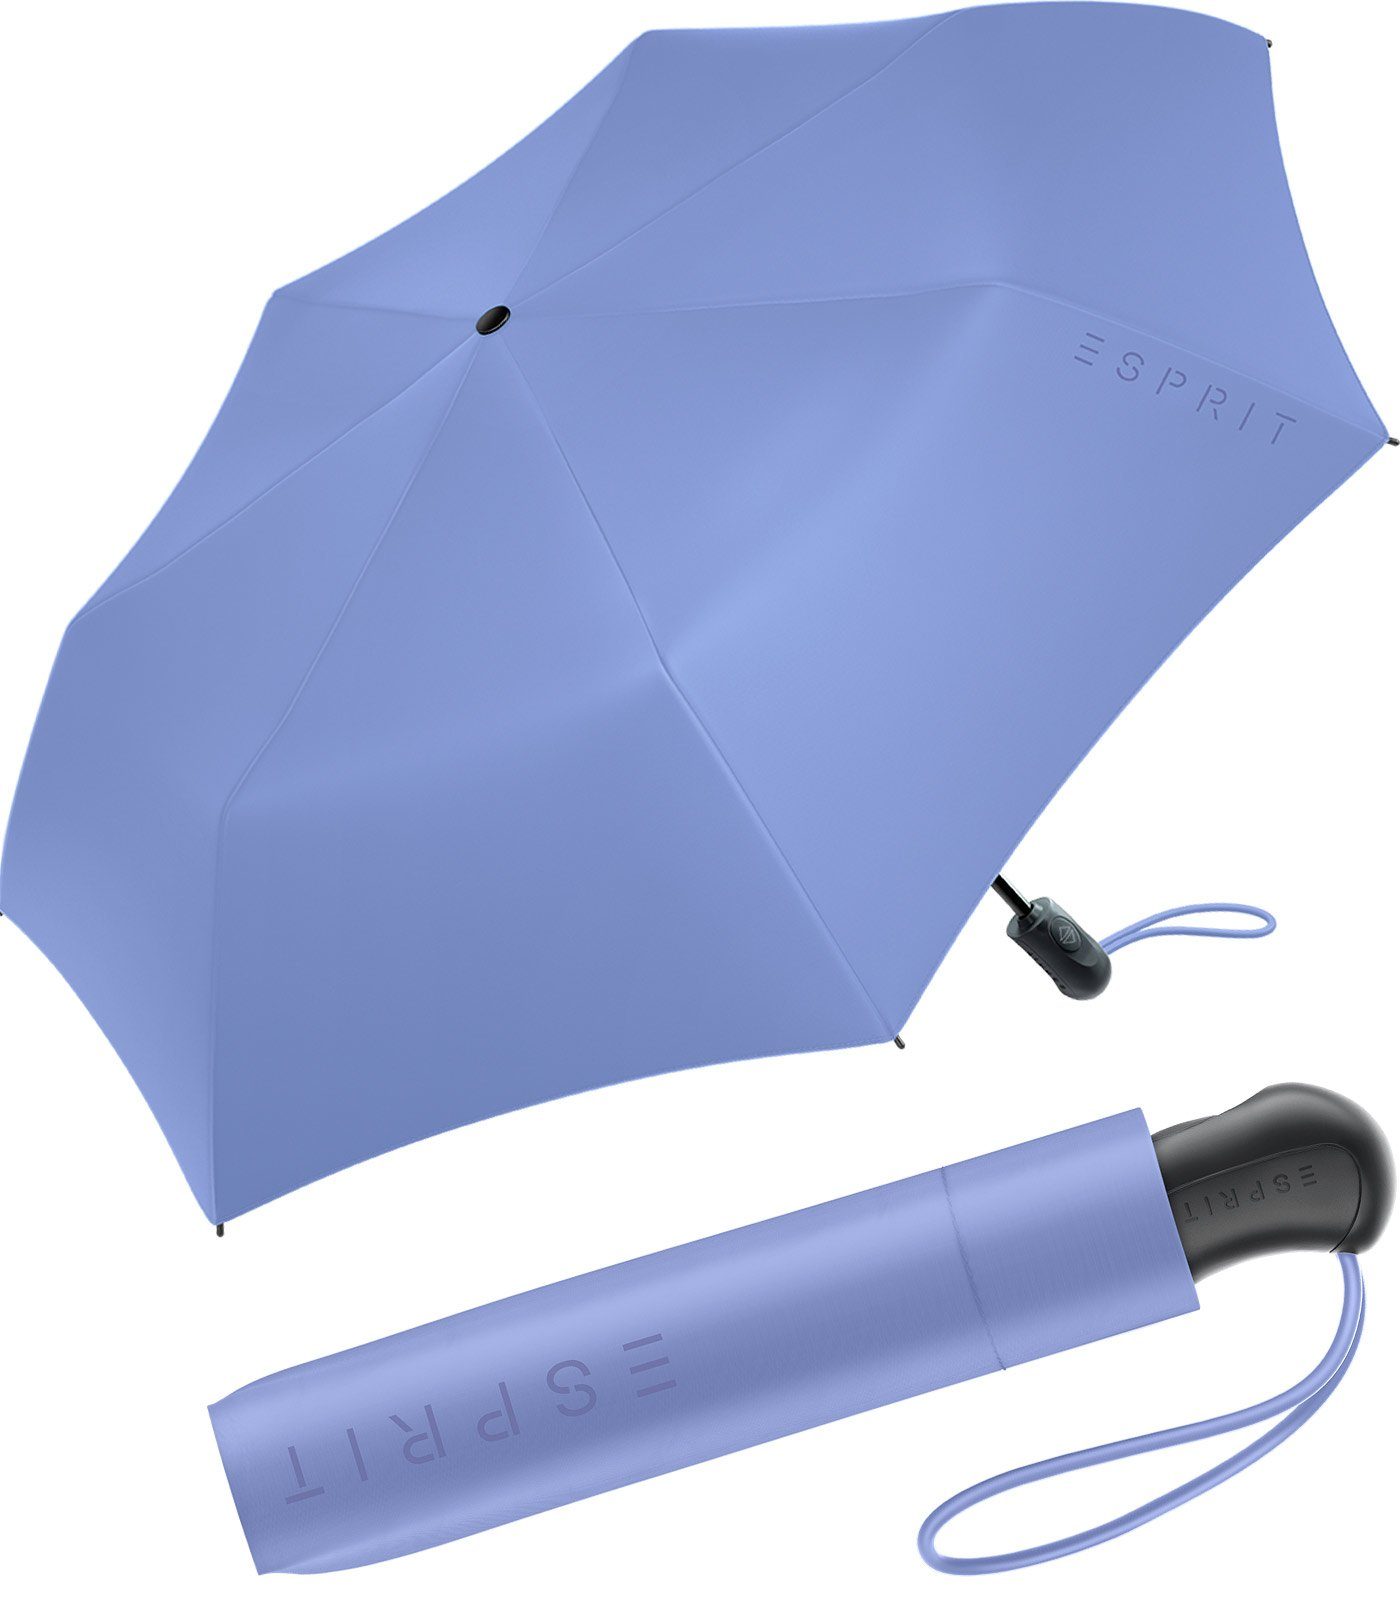 Esprit Taschenregenschirm Damen Easymatic Light Auf-Zu Automatik FJ 2023, stabil und praktisch, in den neuen Trendfarben lila | Taschenschirme